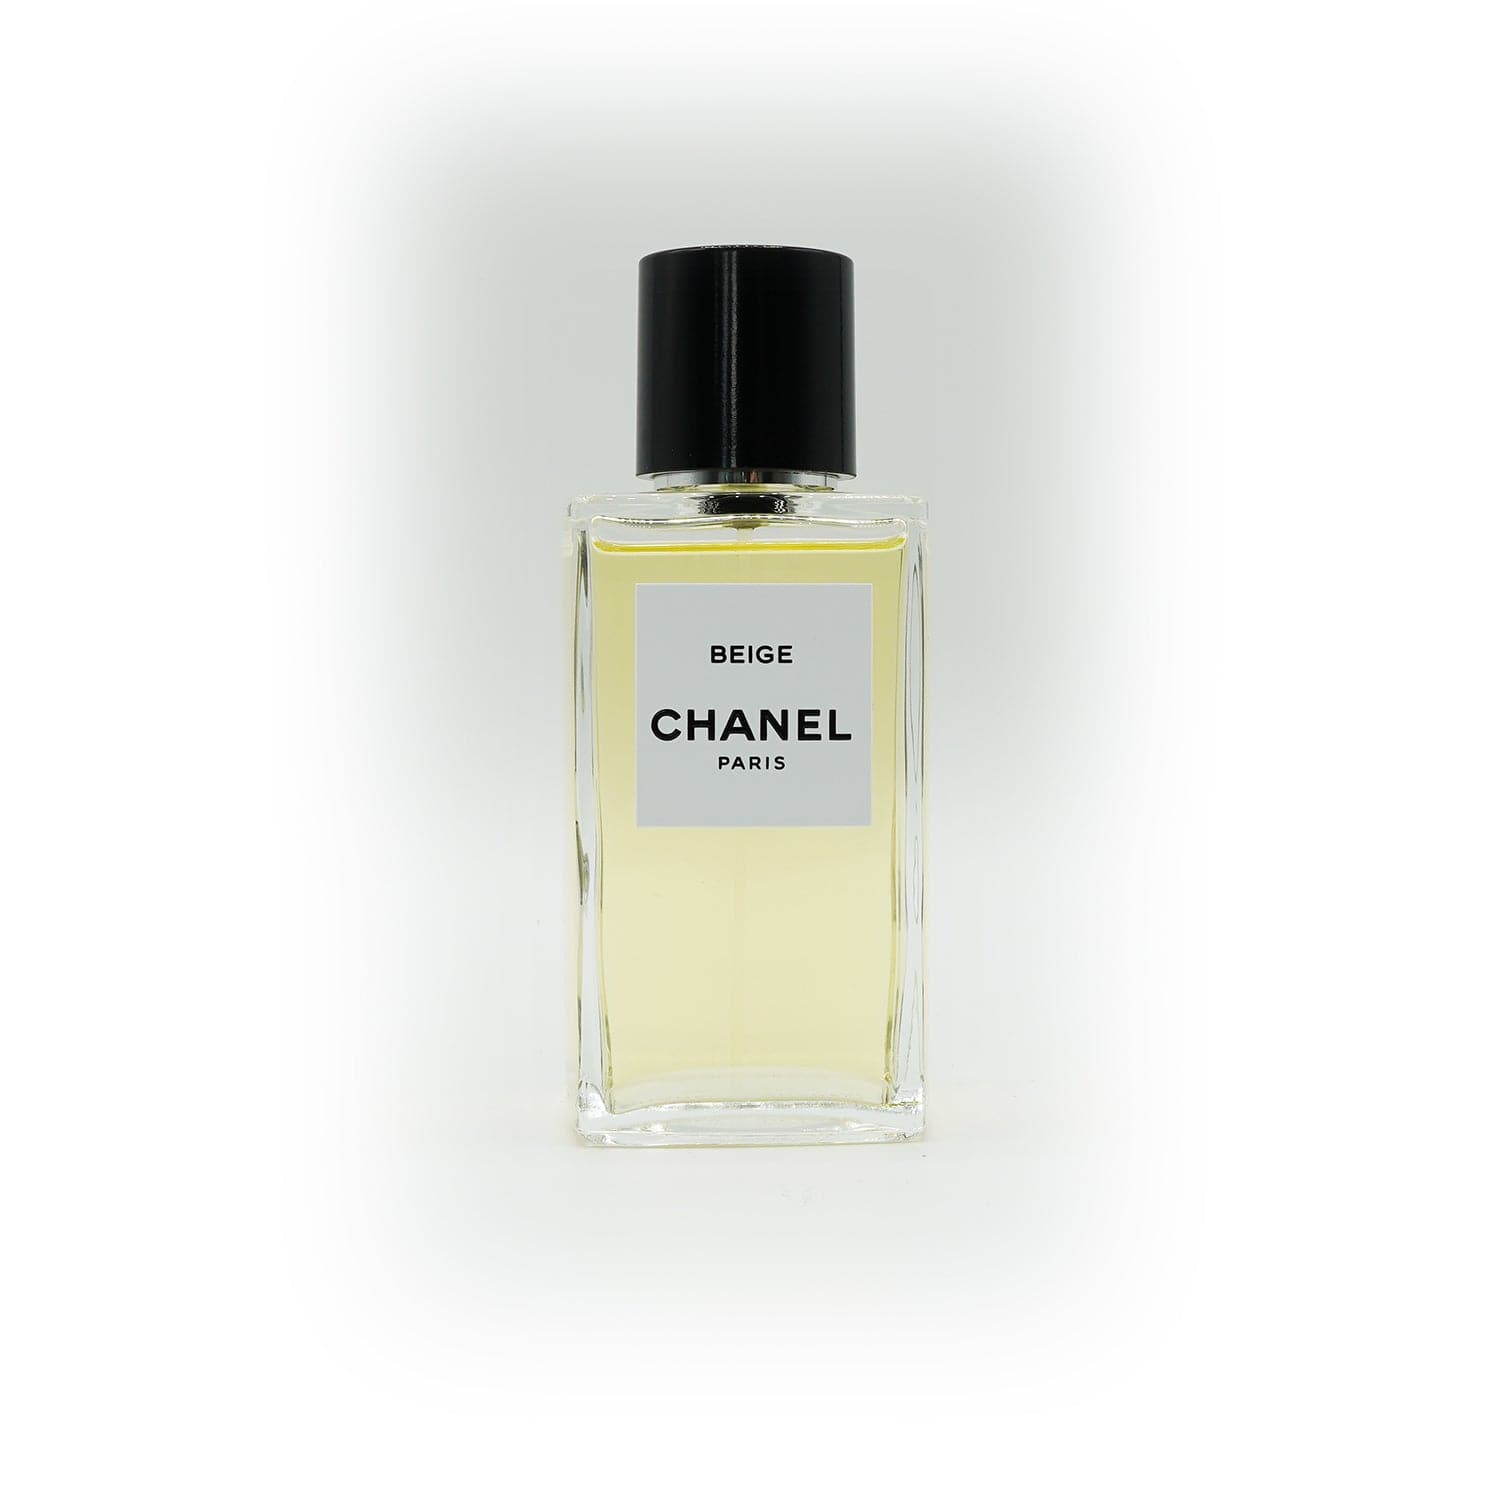 Your favorite Les Exclusifs de Chanel scent? : r/fragrance